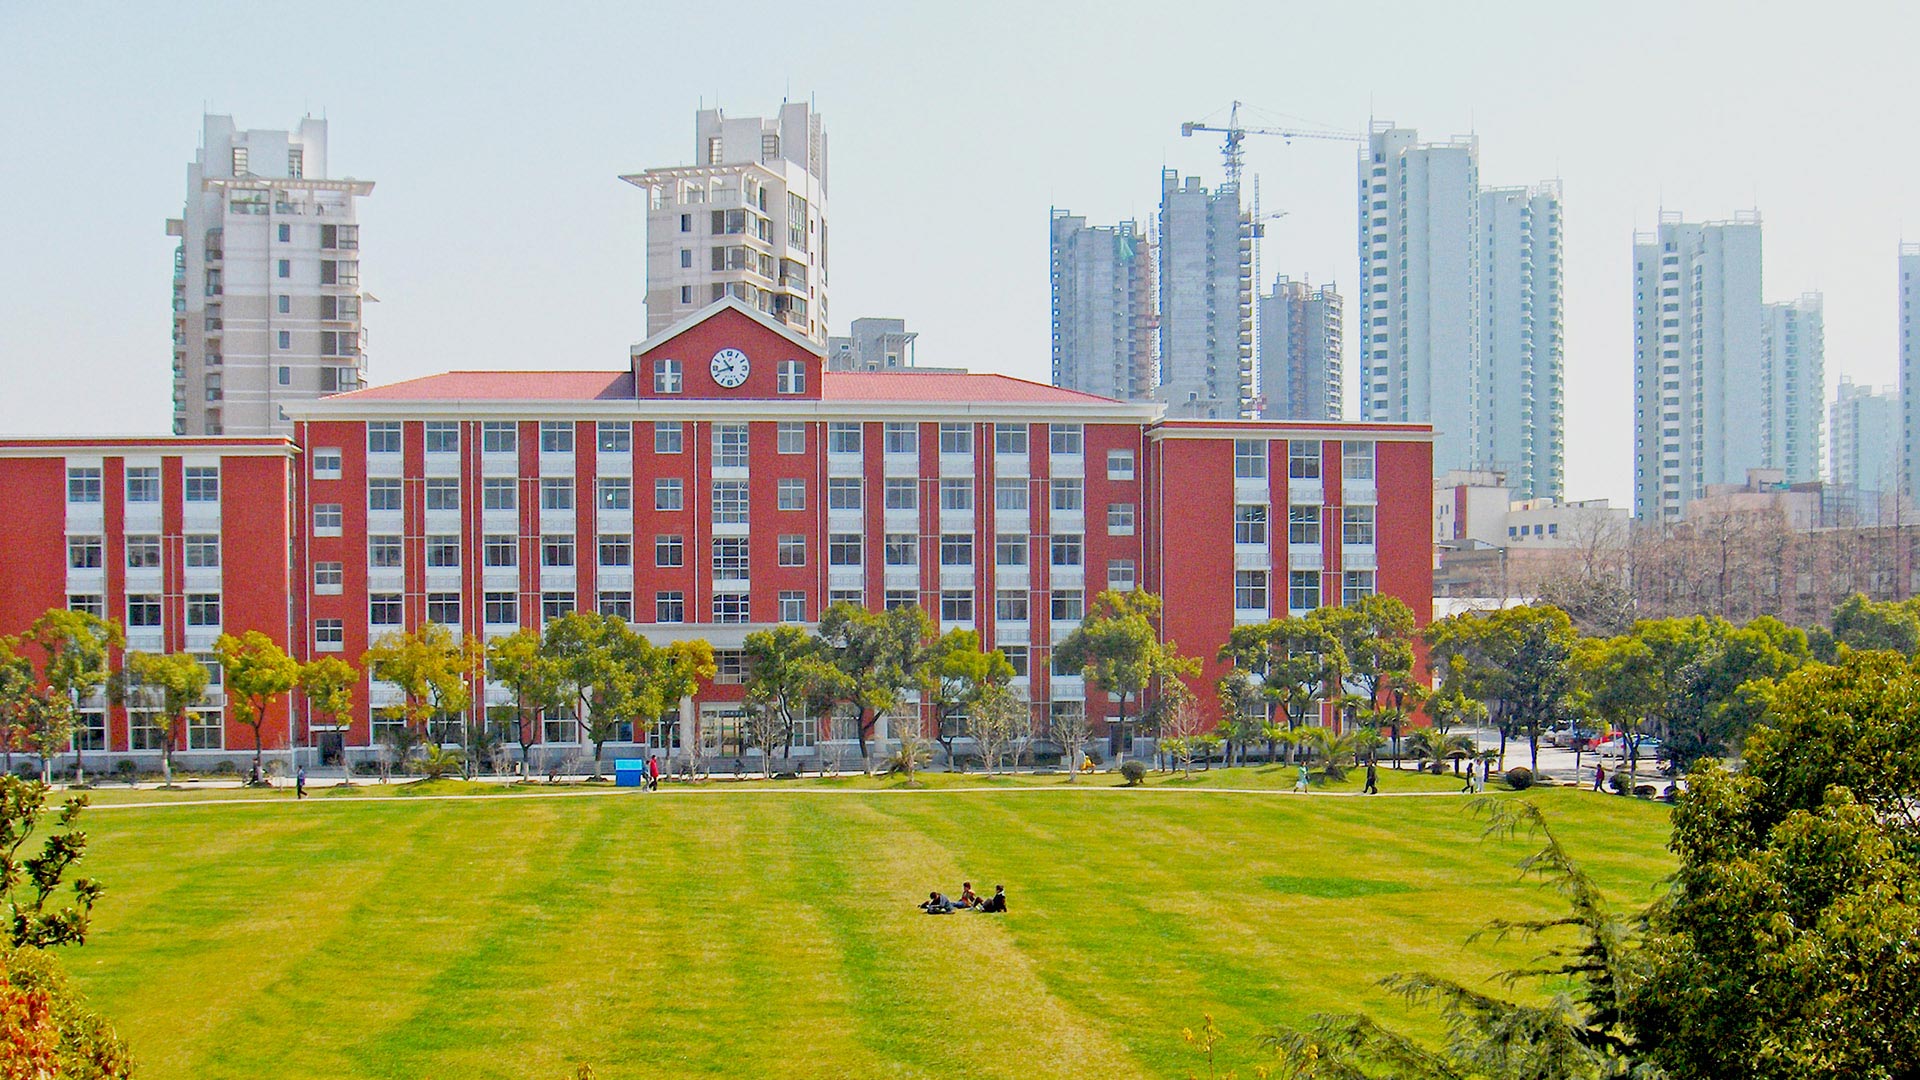 20-2-2019/shanghai-university-in-china-20.jpg